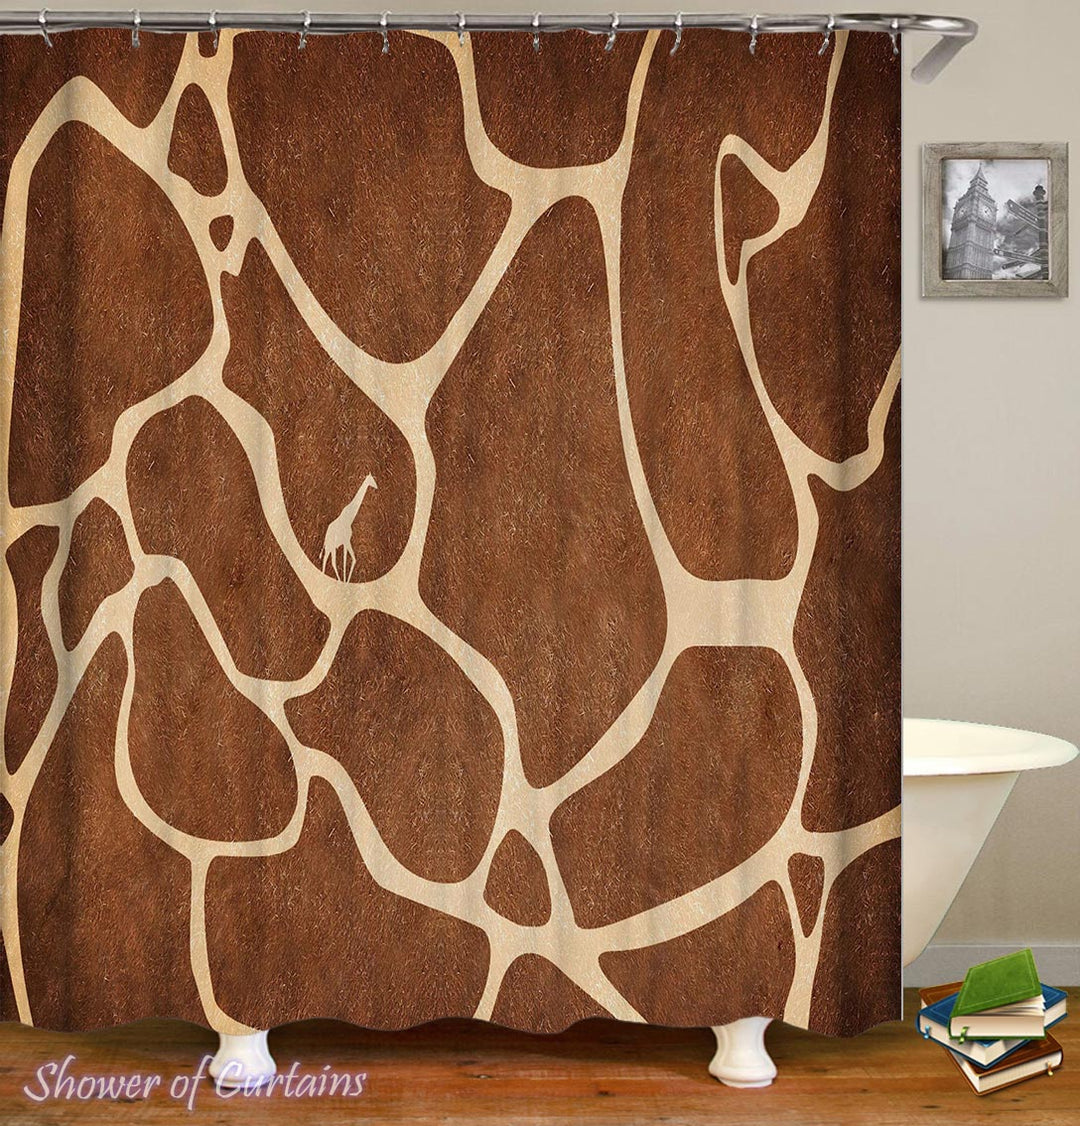 Giraffe Shower Curtain - Giraffe Skin Pattern